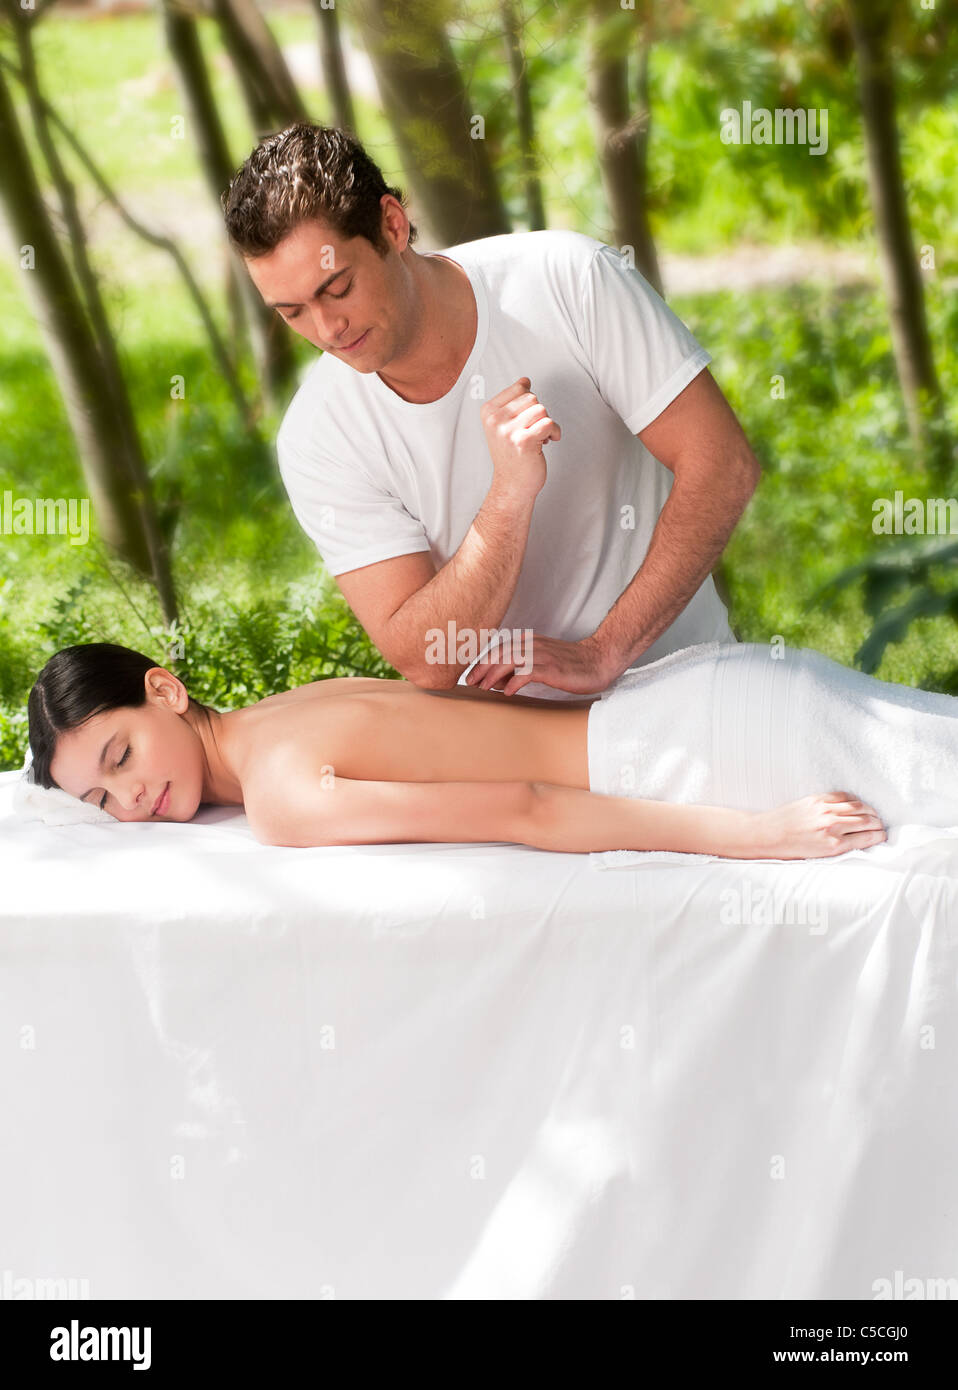 Hot Guy Massage